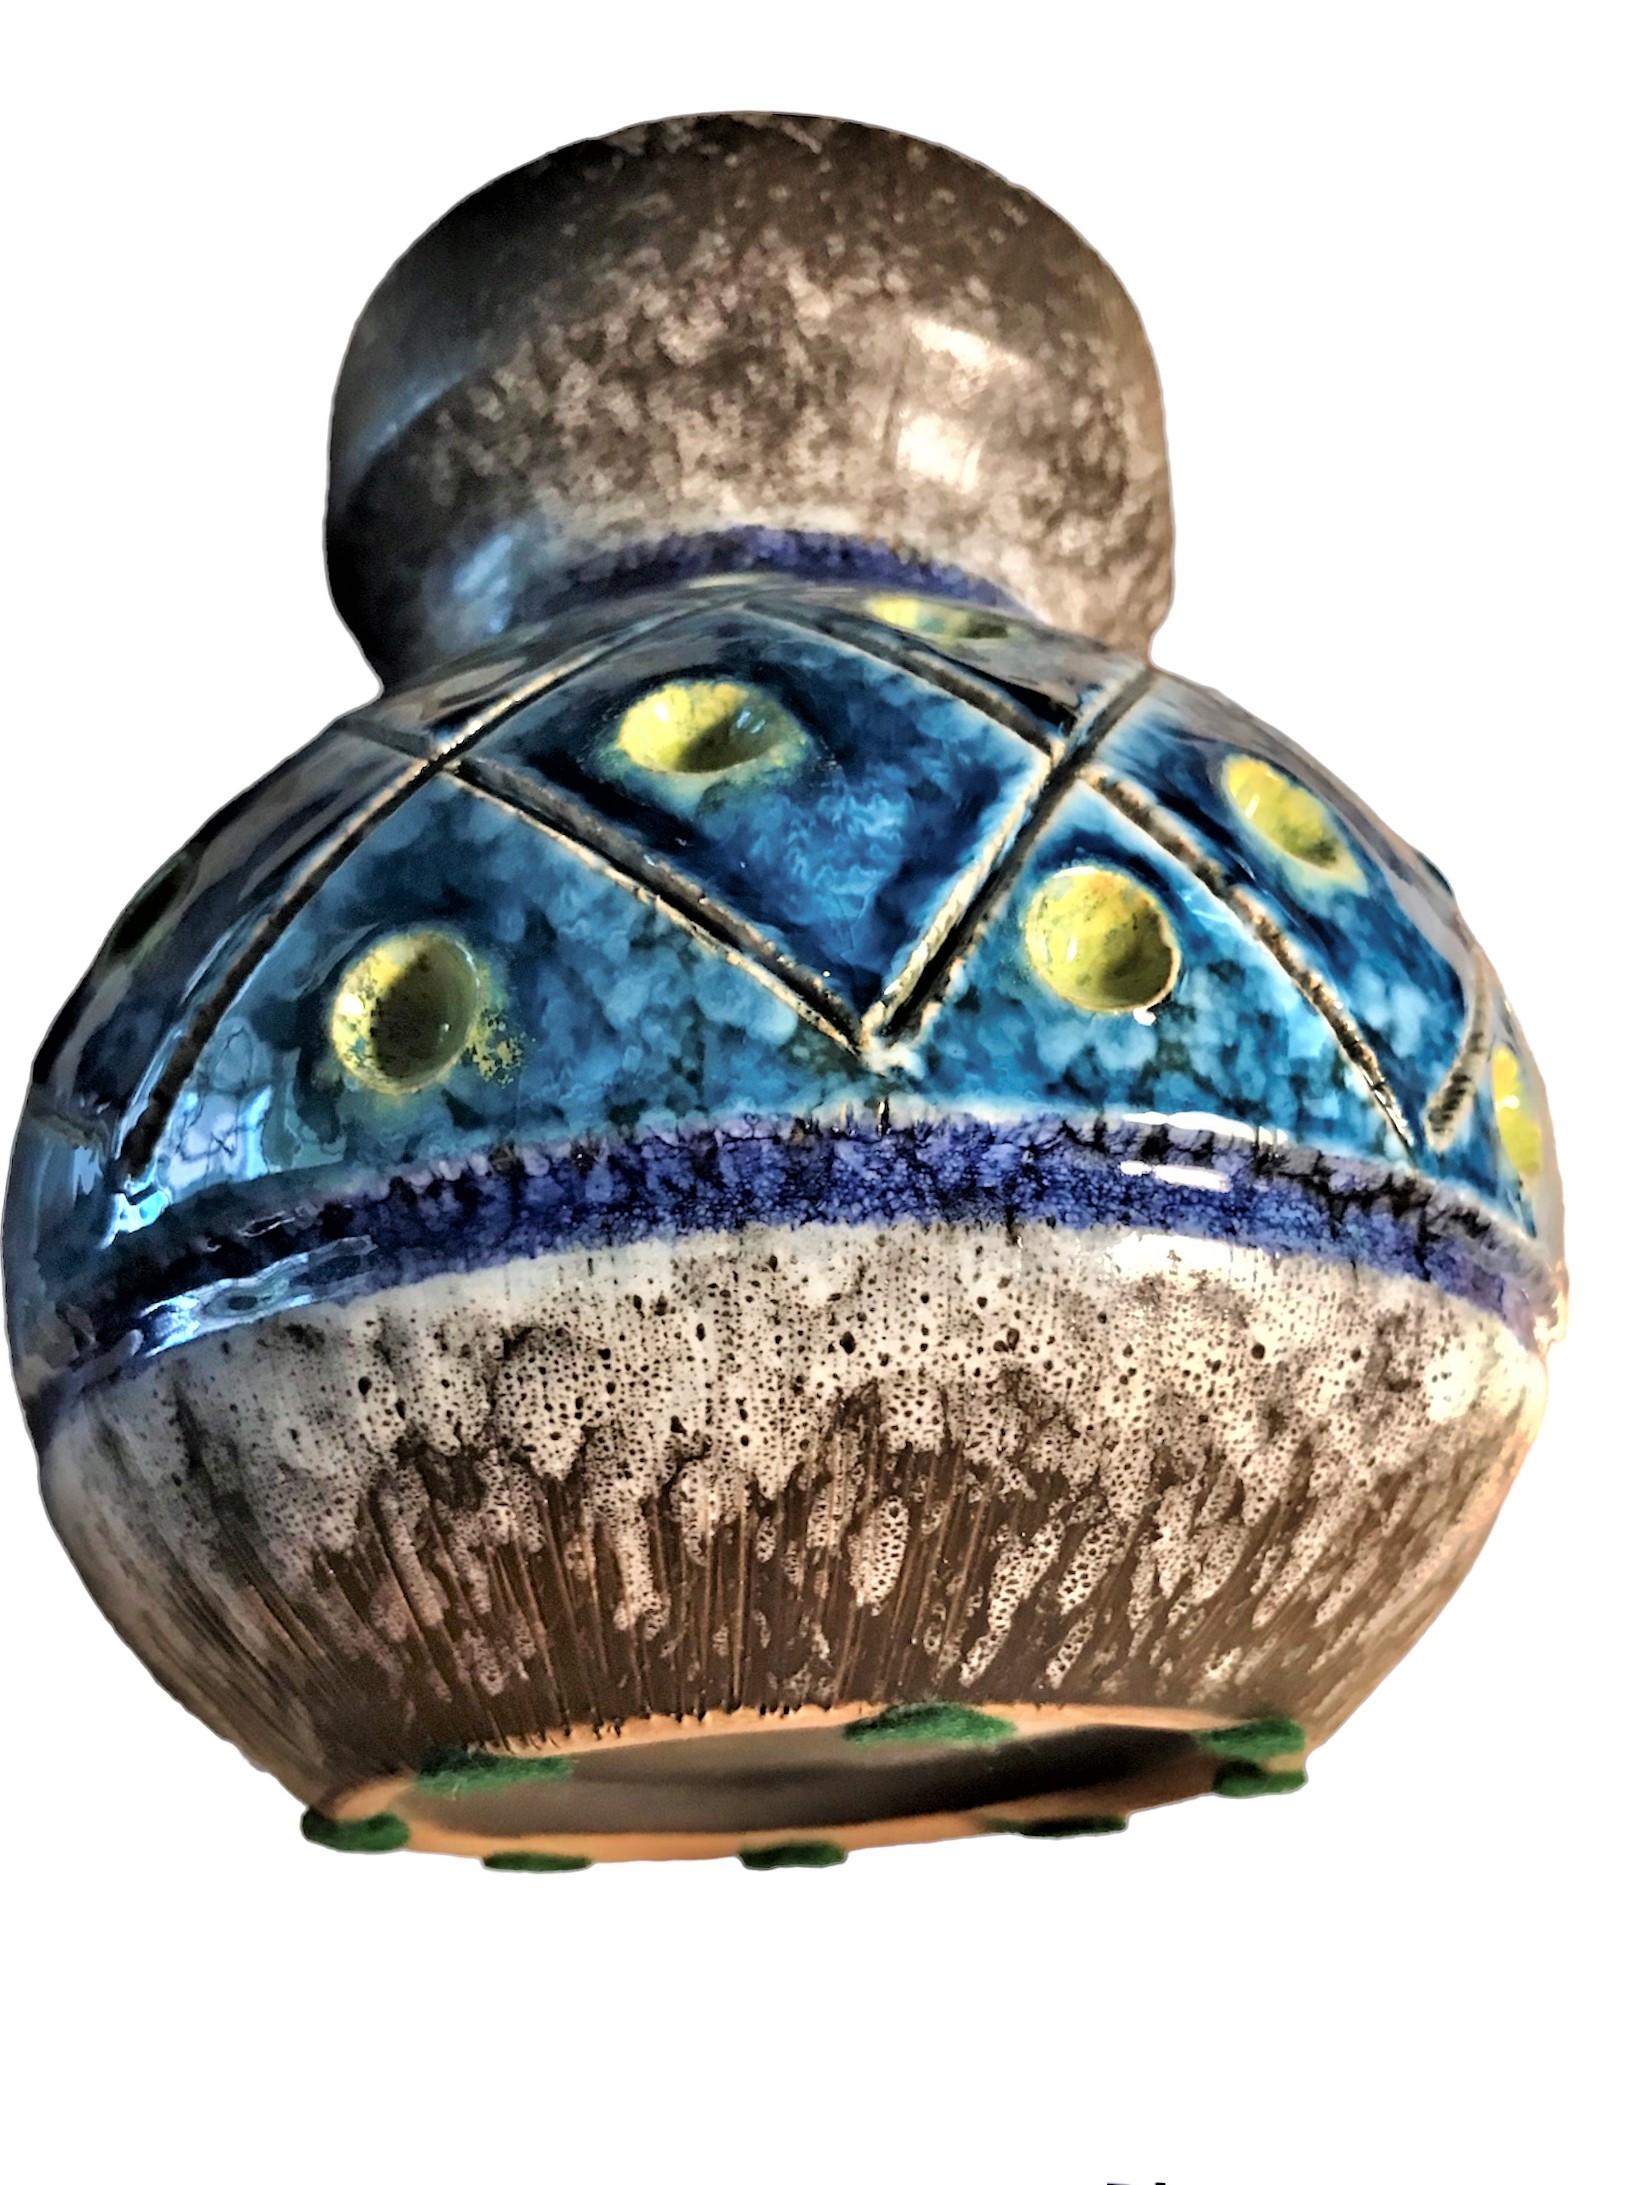 Exquisite Mid Century Modern deutsche Keramik-Vase von OCA Kronach in Bayern. Mit einem Muster aus eingeschnittenen, senkrechten Linien auf dunkelbraunem Grund und einer schaumigen, gräulichen Lavaglasur am Rand und am Boden. Der mittlere Teil der